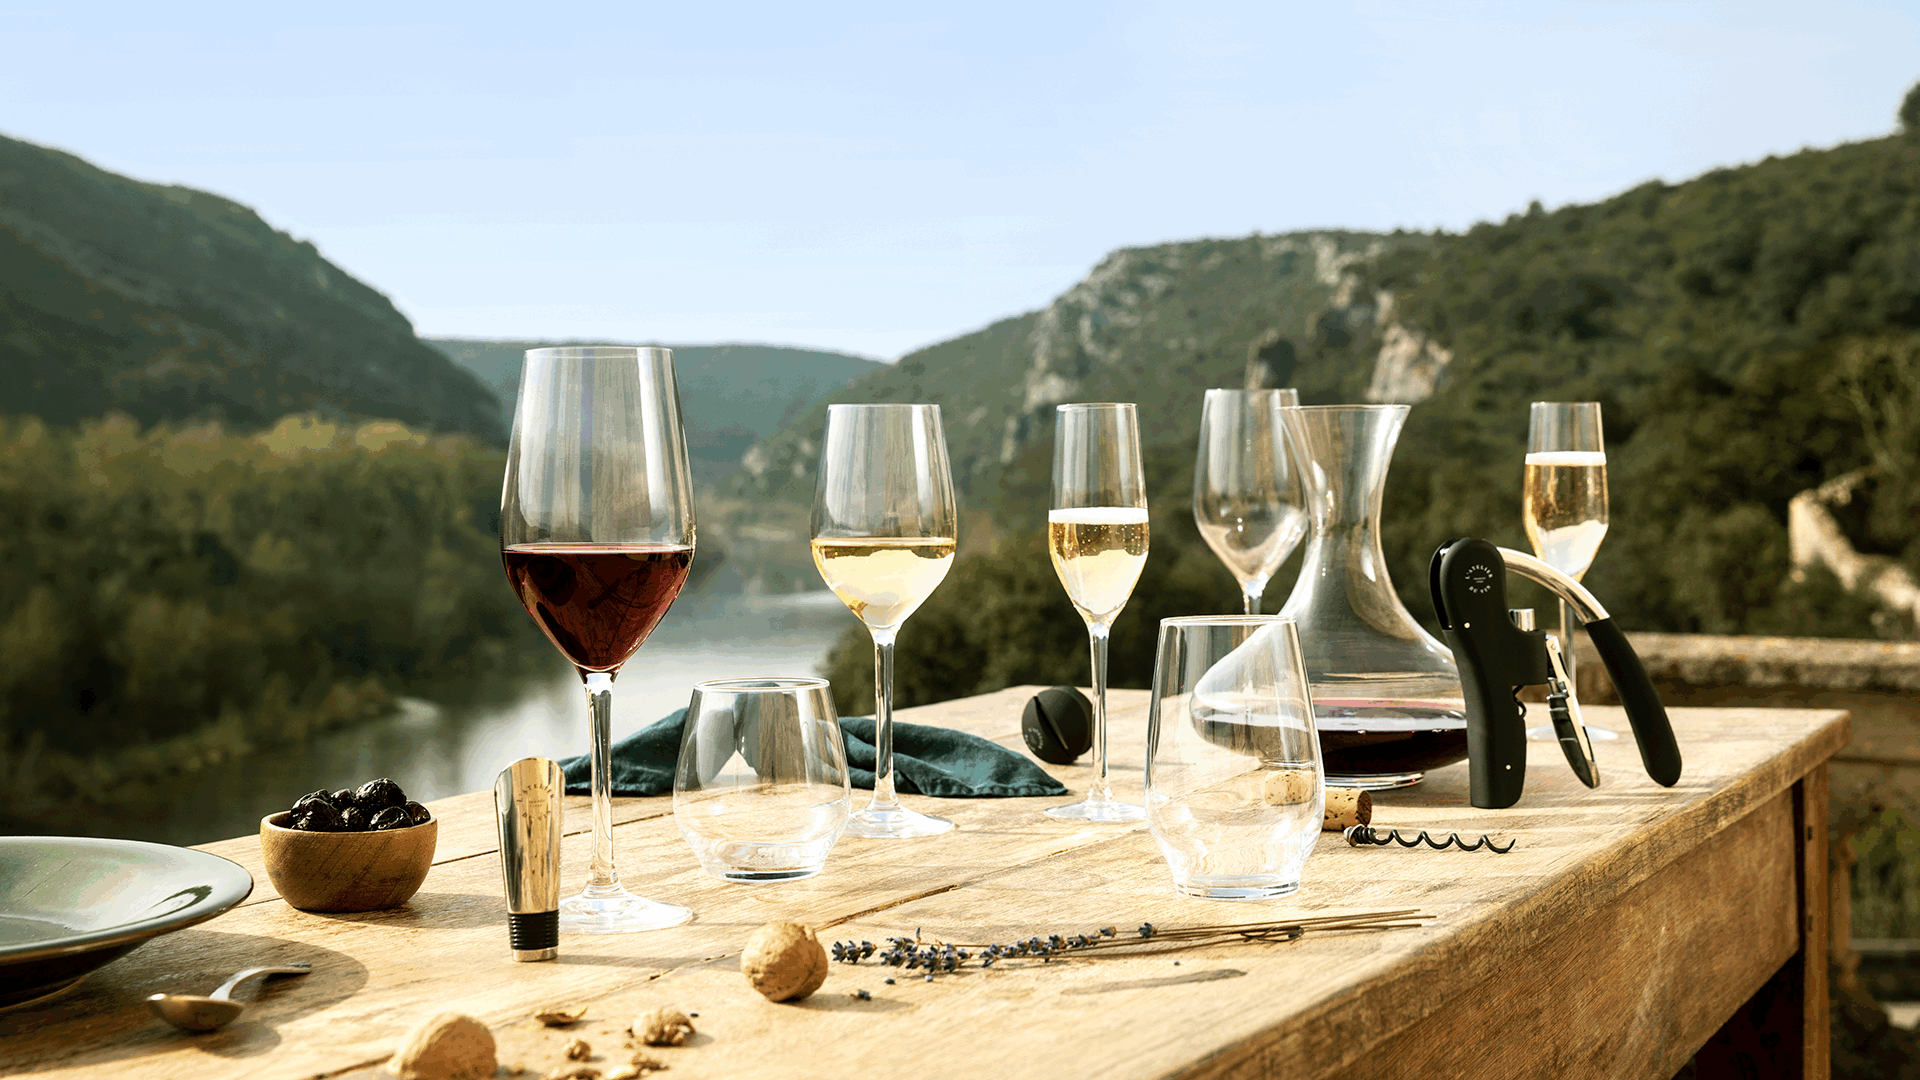 Raise your glass with L'Atelier du Vin!